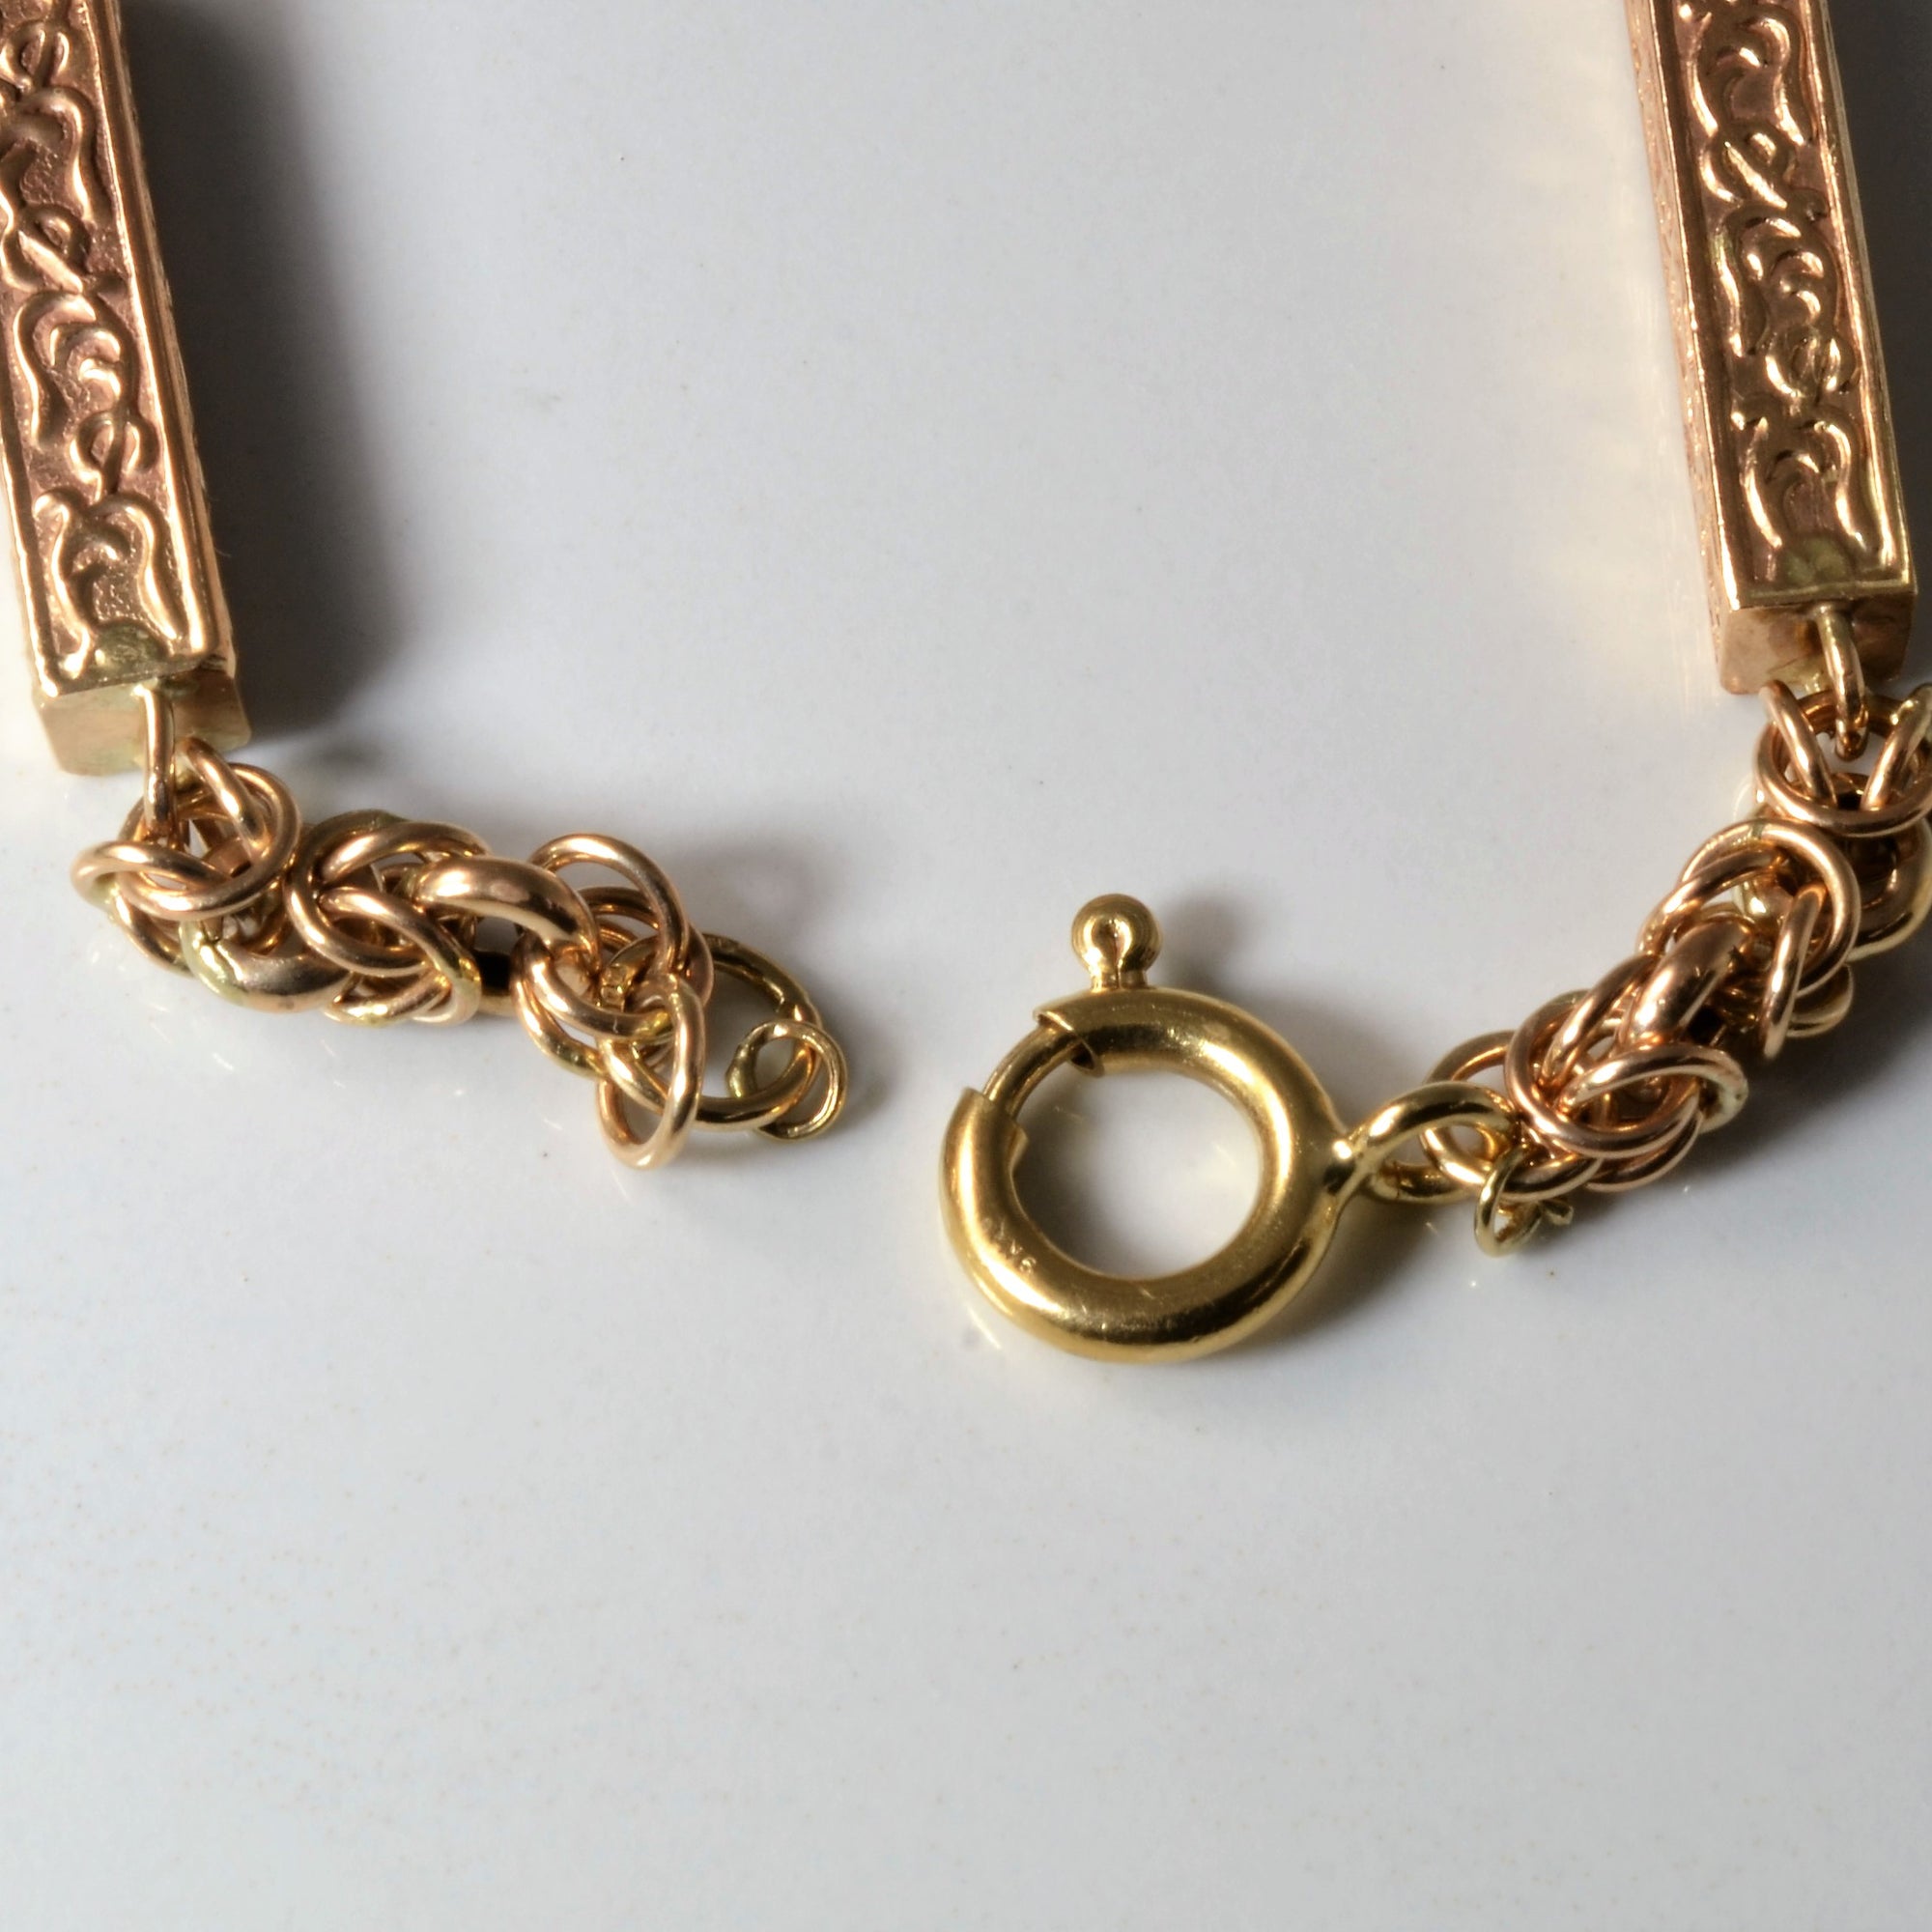 Early 1900s Ornate Byzantine Chain Bracelet | 8